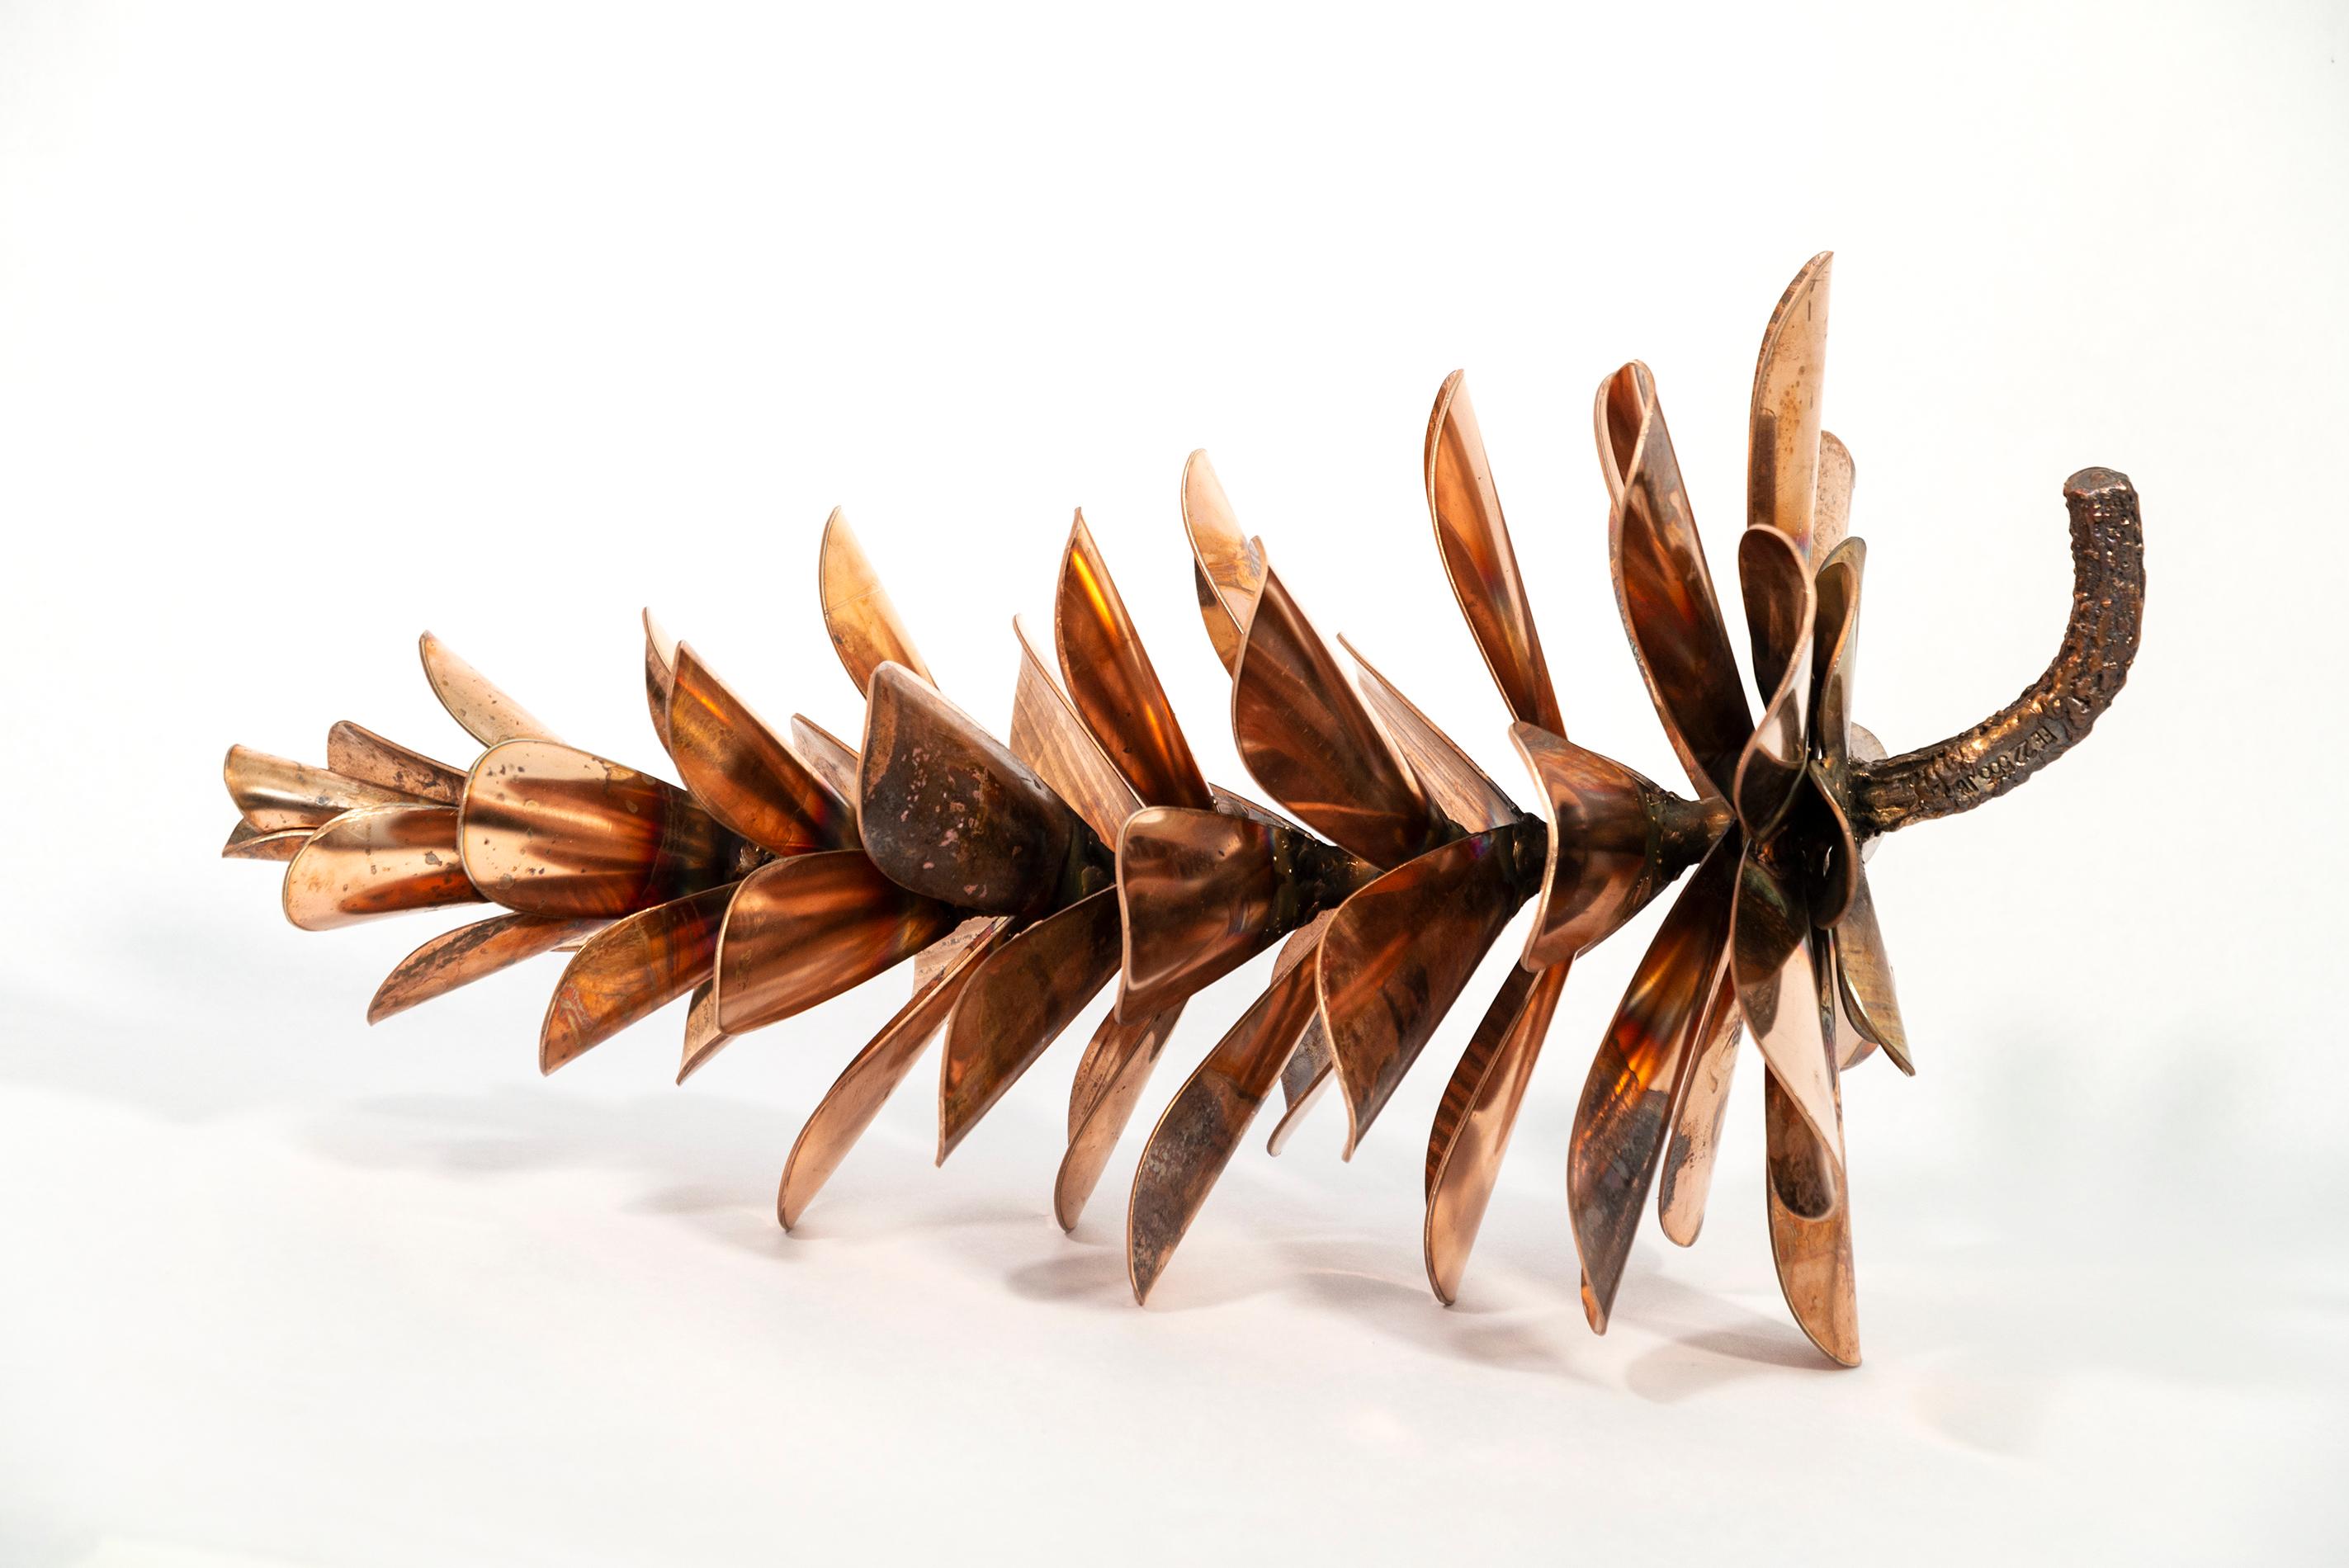 Figurative Sculpture Floyd Elzinga - Conne de pin en bronze 22555 - nature inspirée, nature morte, sculpture en bronze forgé